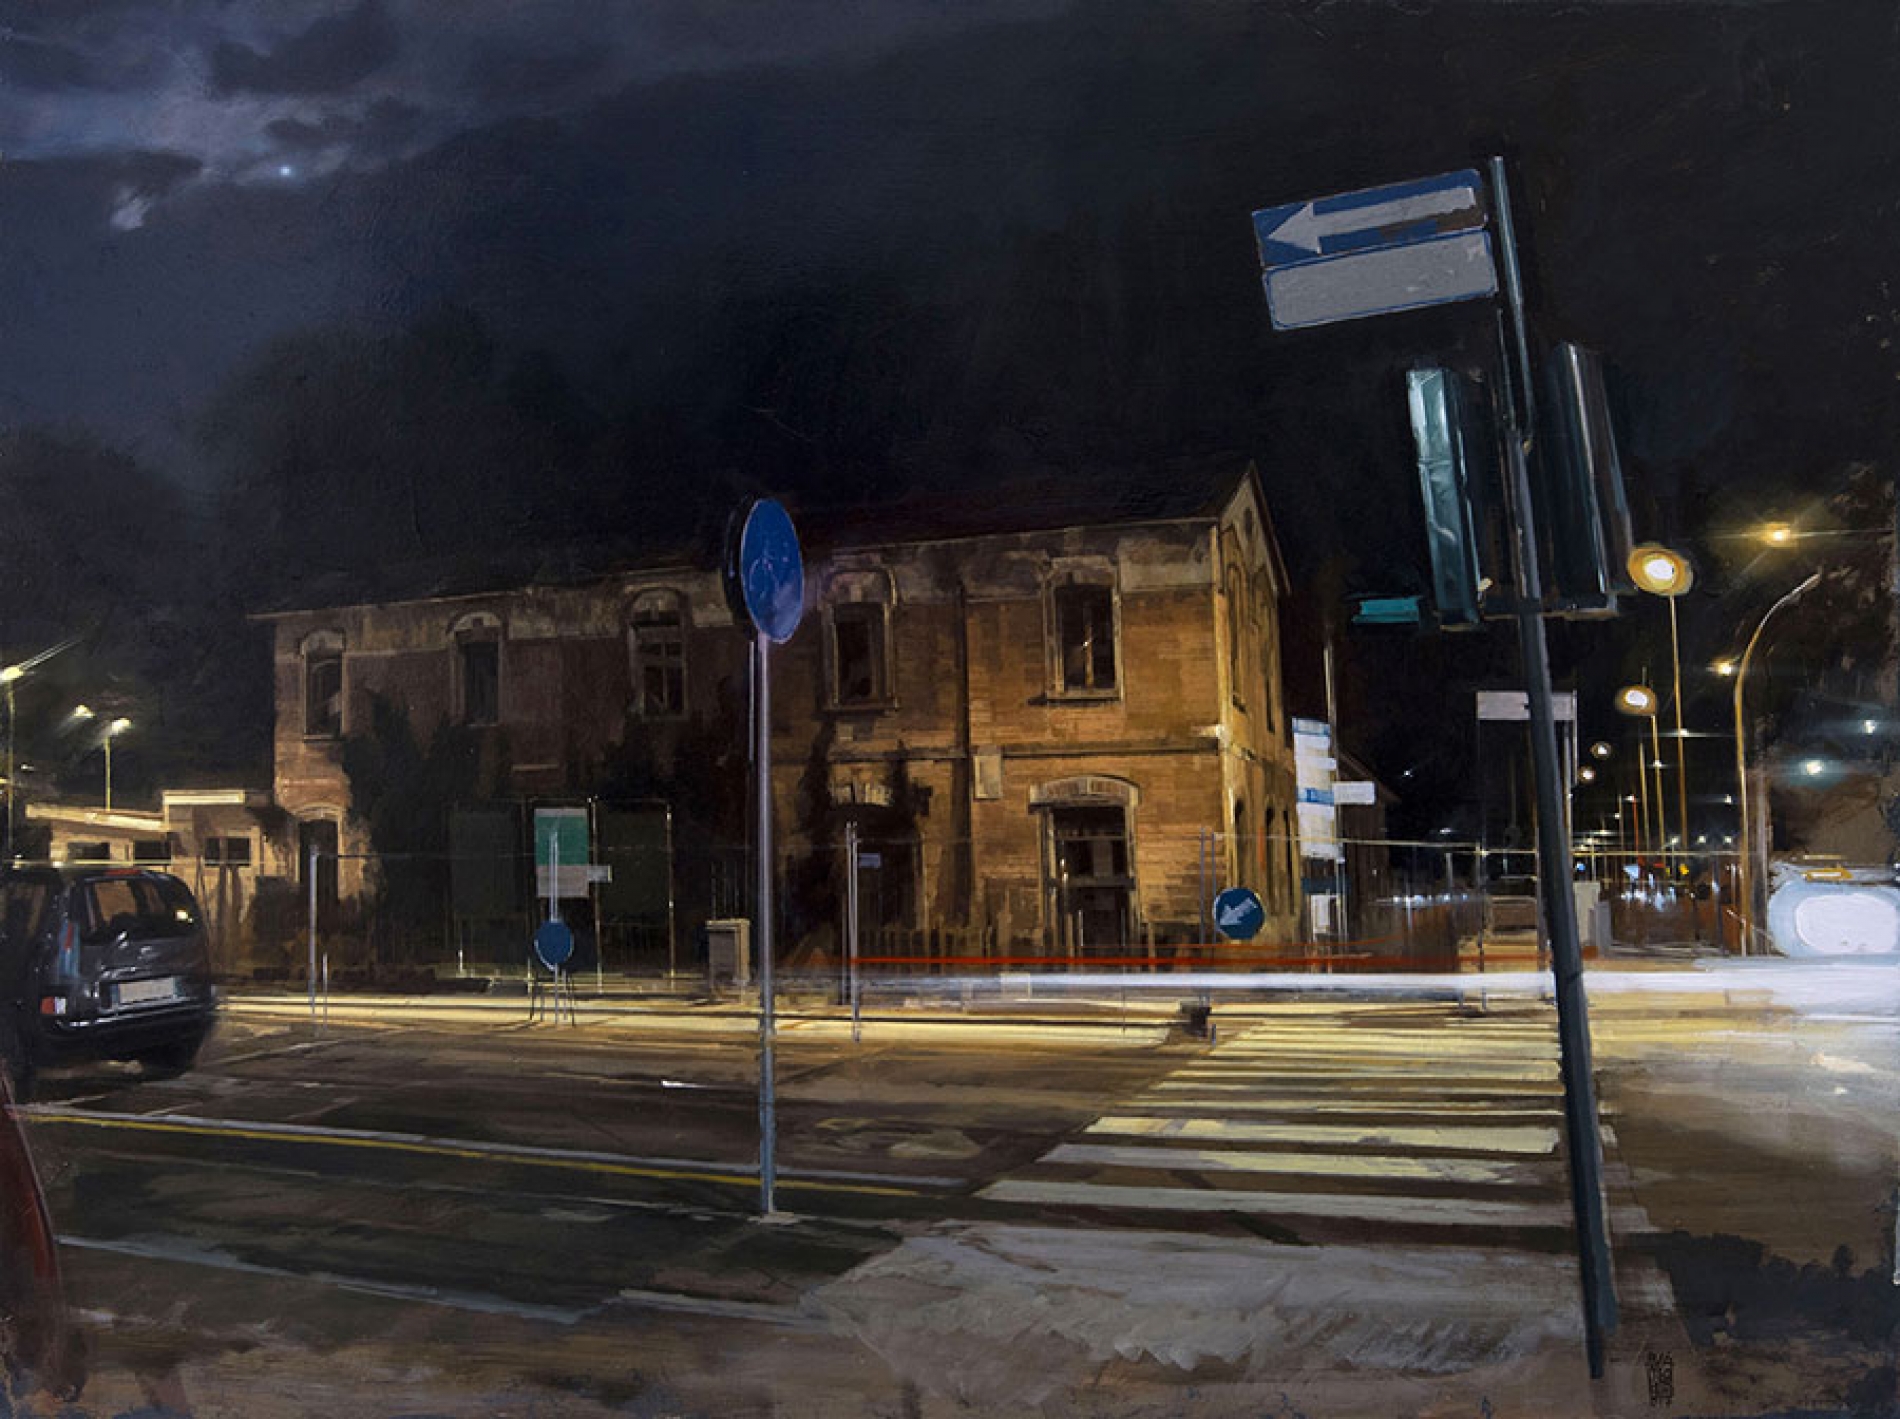 Notte di luna,2016/17, olio su tavola, cm. 60x80